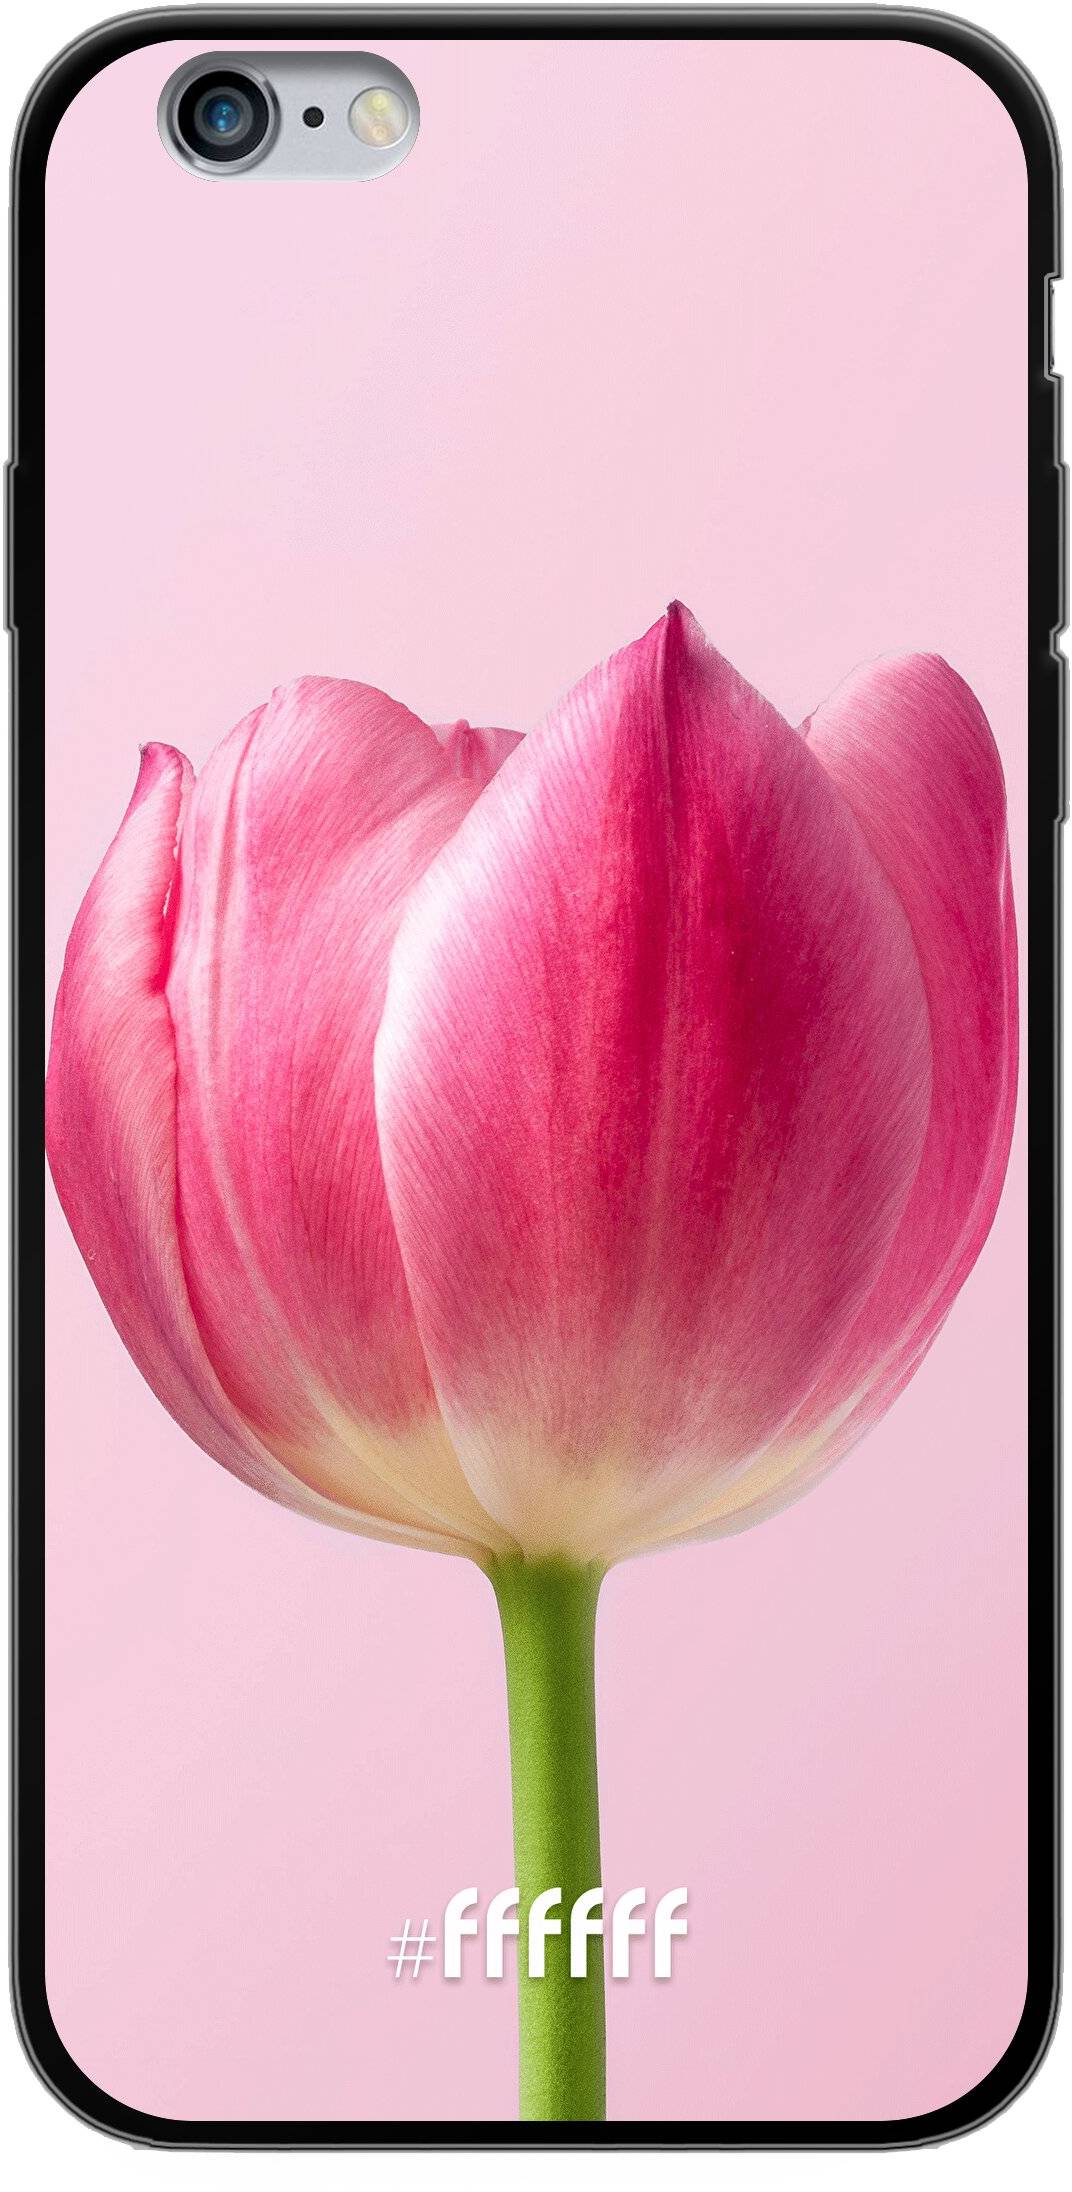 Pink Tulip iPhone 6